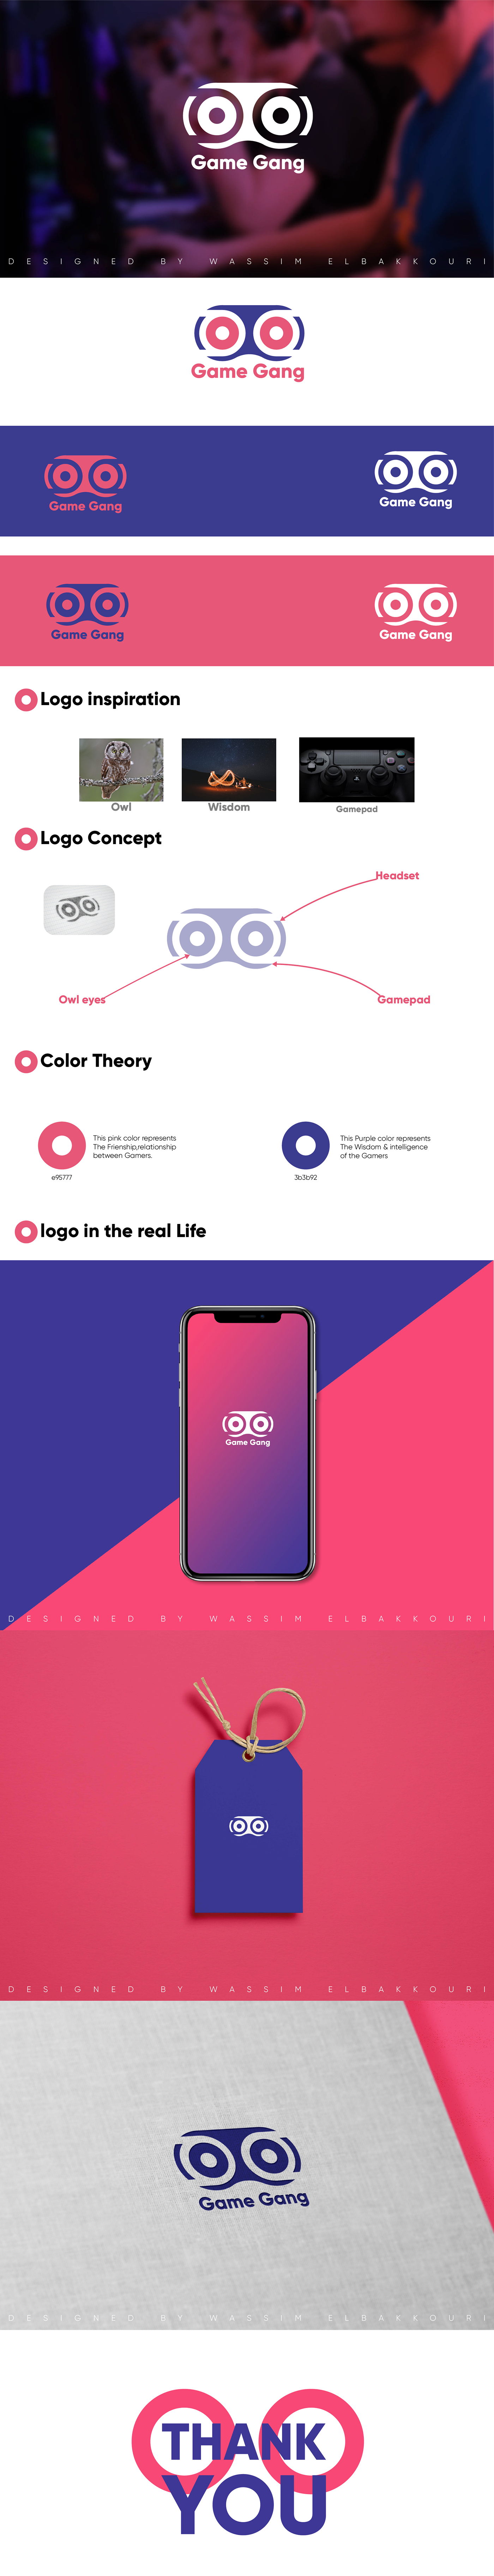 logo brand pink purple Unique creative idea new game owl